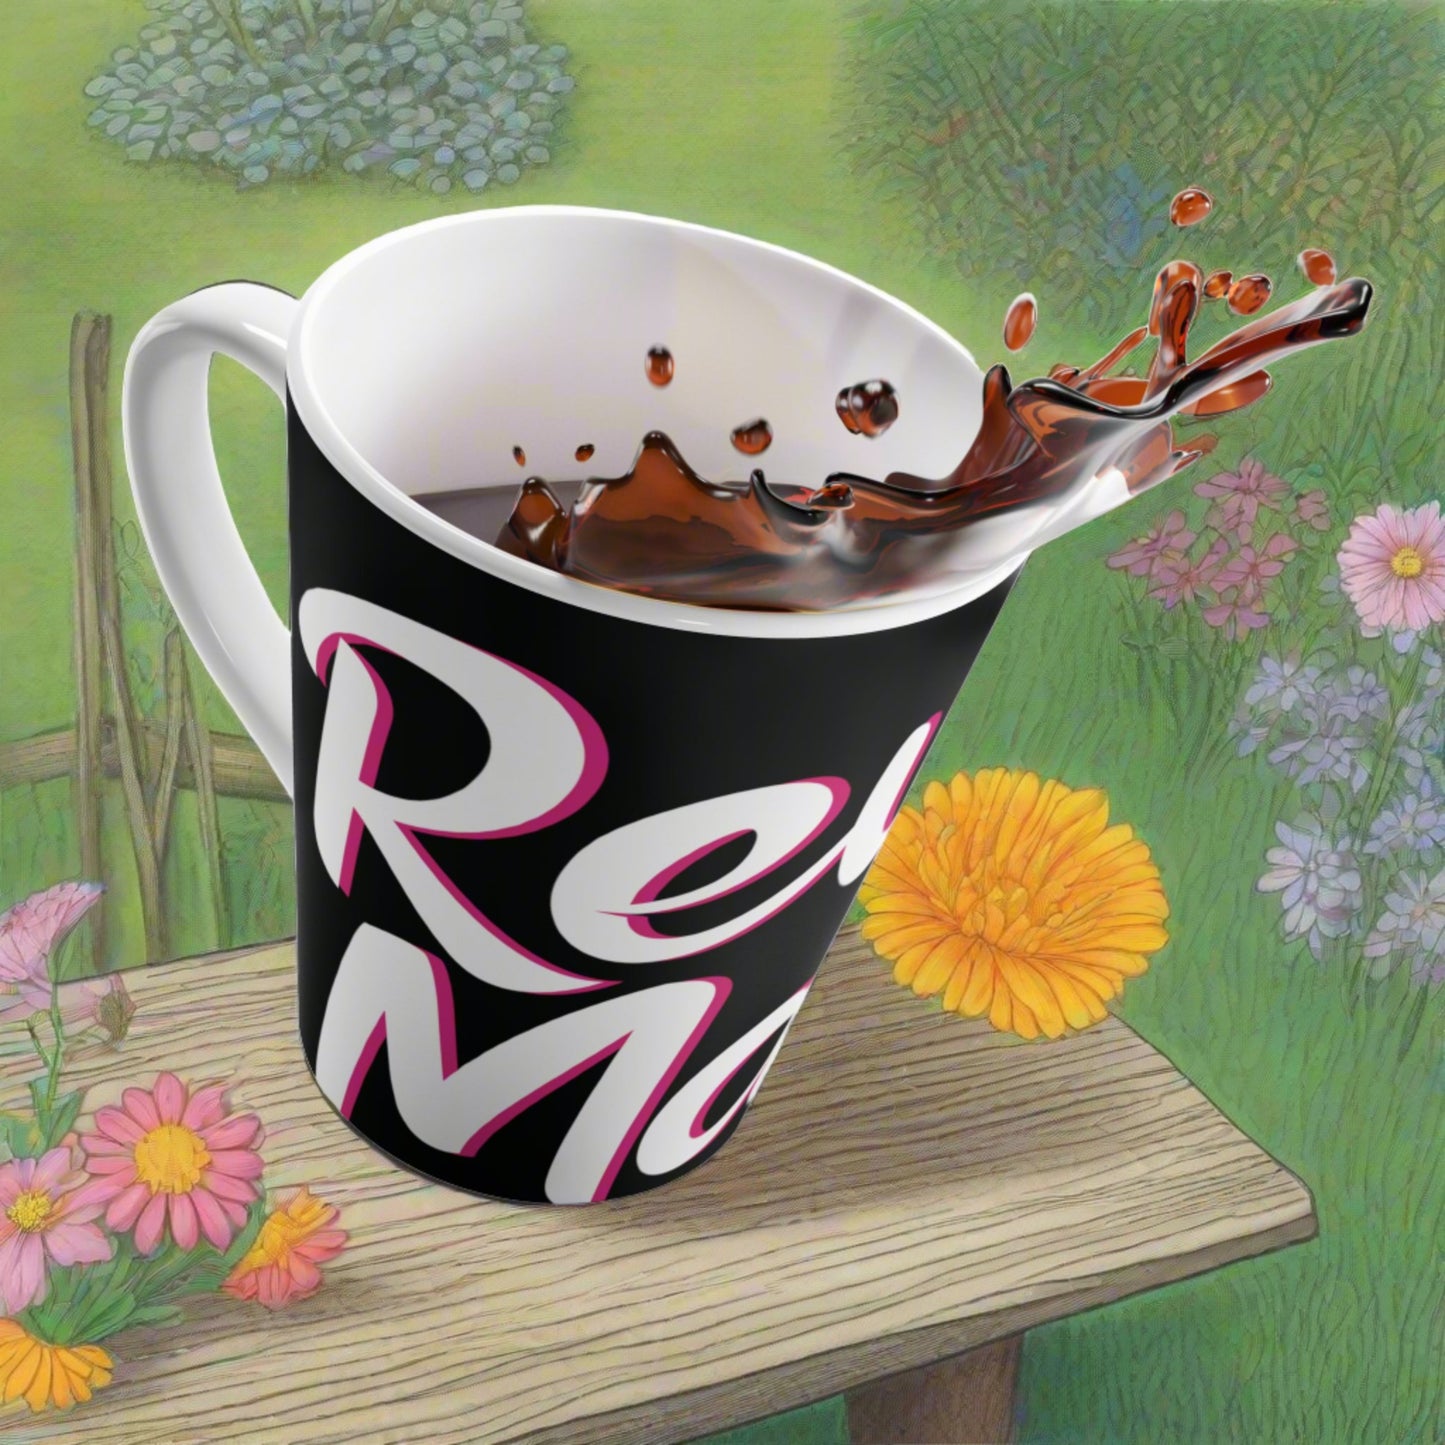 Latte Mug 12oz (350 ml) | Black & White RevelMates Design